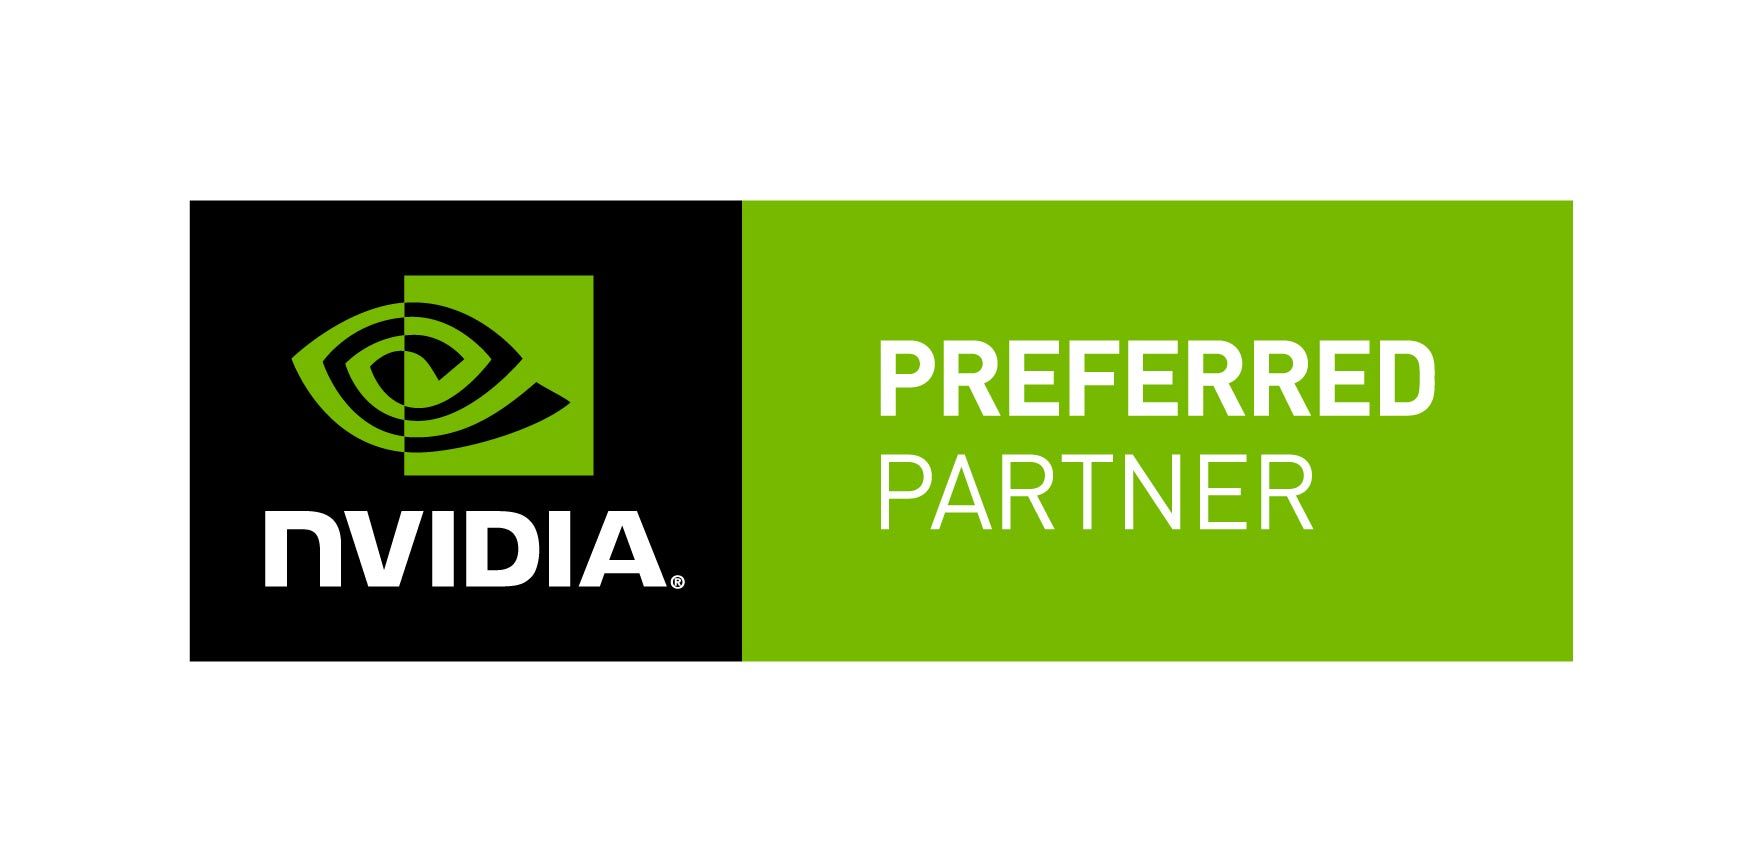 NVIDIA - Preferred Partner